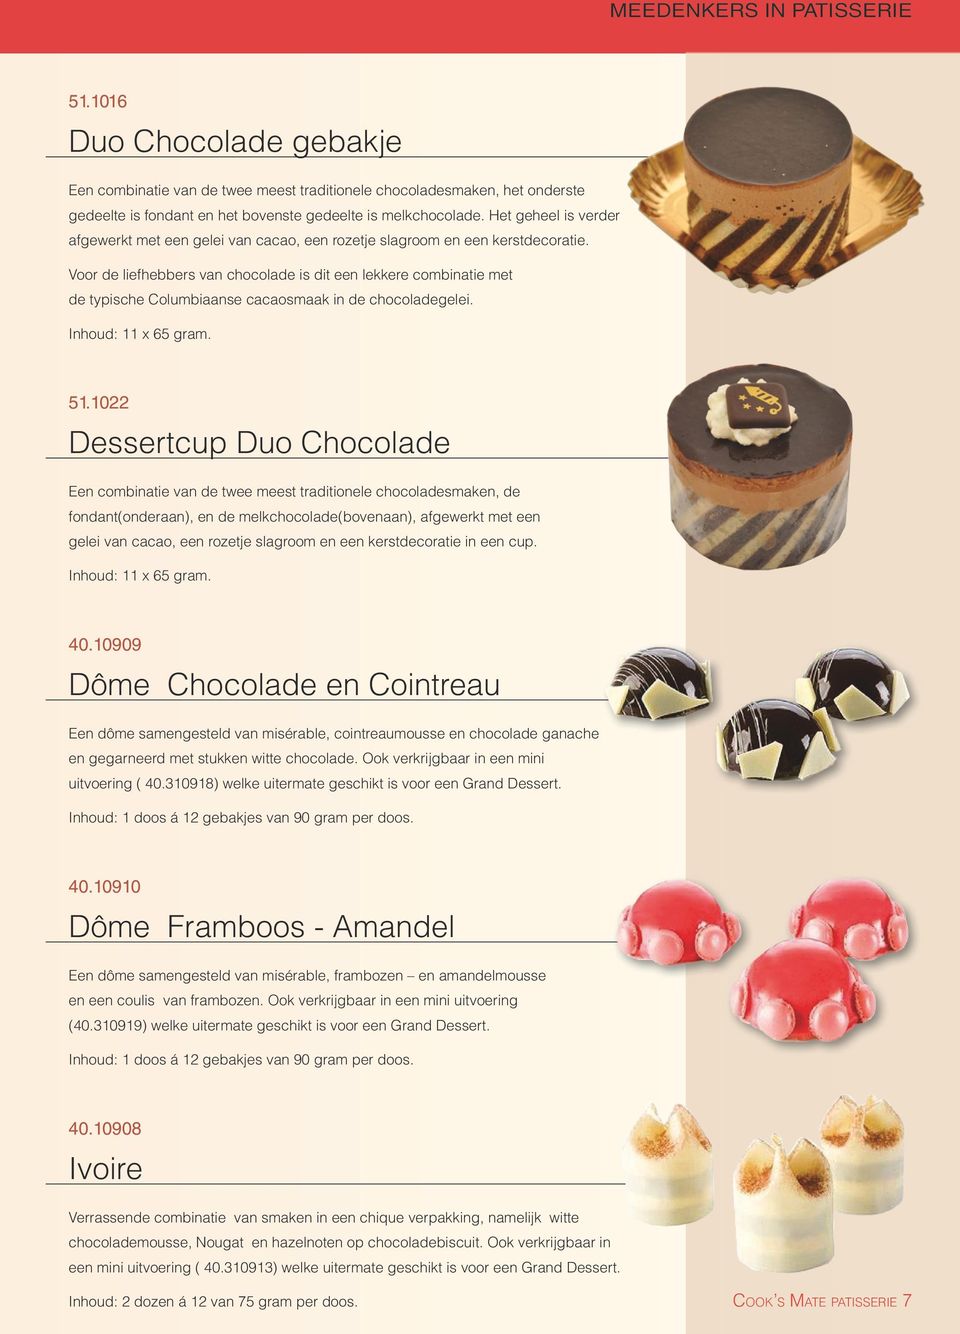 Voor de liefhebbers van chocolade is dit een lekkere combinatie met de typische Columbiaanse cacaosmaak in de chocoladegelei. Inhoud: 11 x 65 gram. 51.